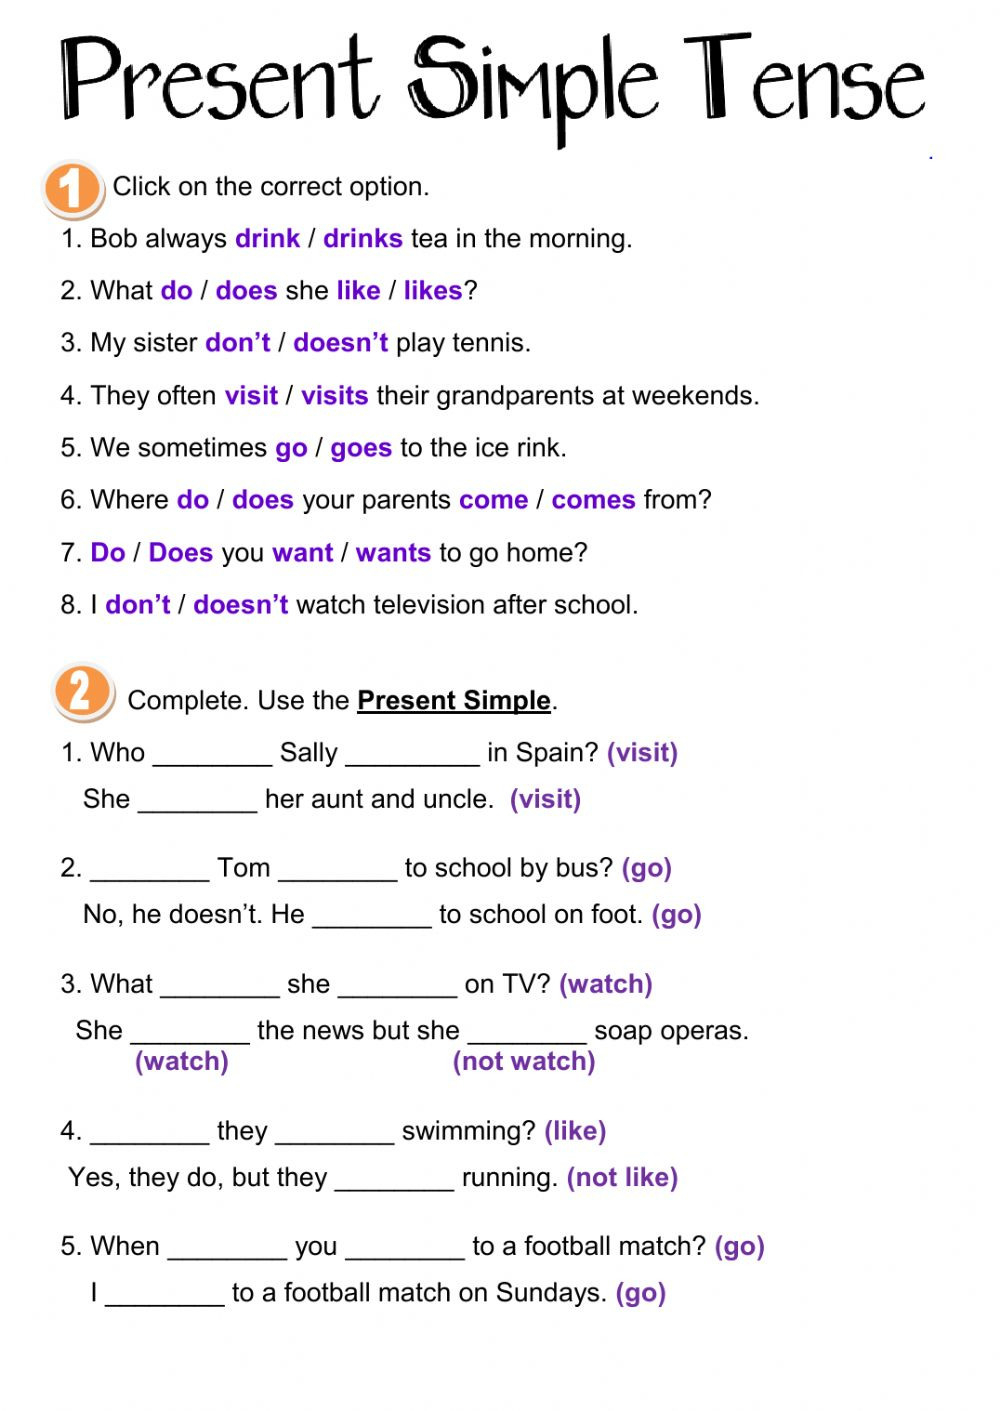 Present Simple Tense Interactive Worksheet Db excel